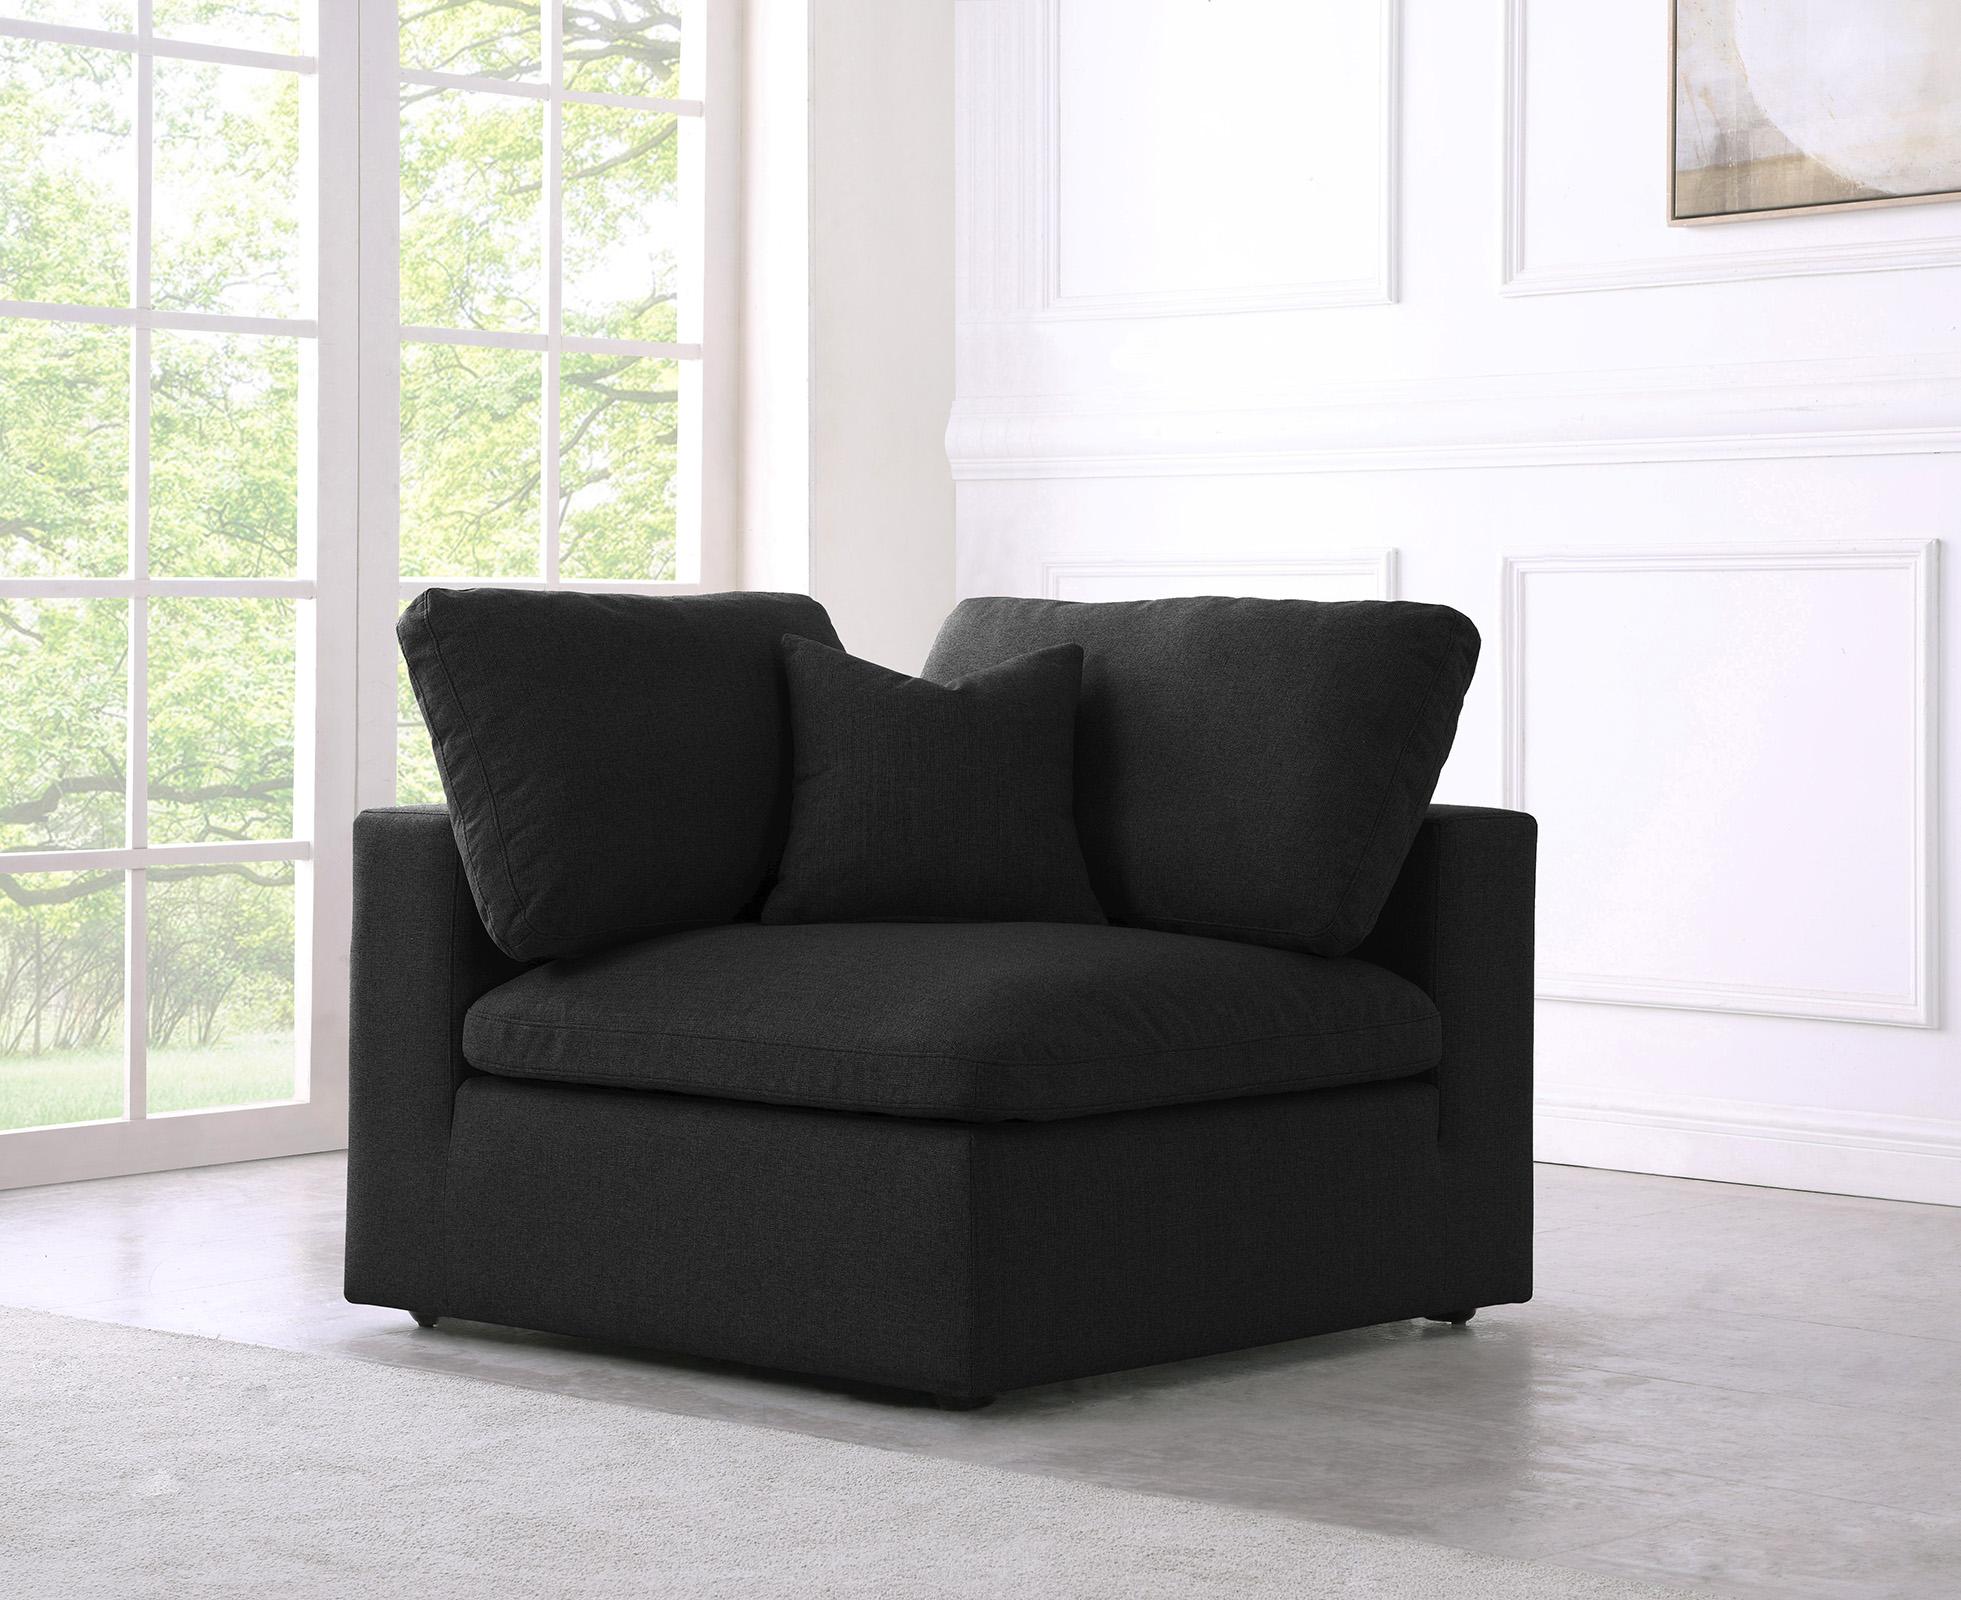 

    
Serene Black Linen Textured Fabric Deluxe Comfort Corner Chair
